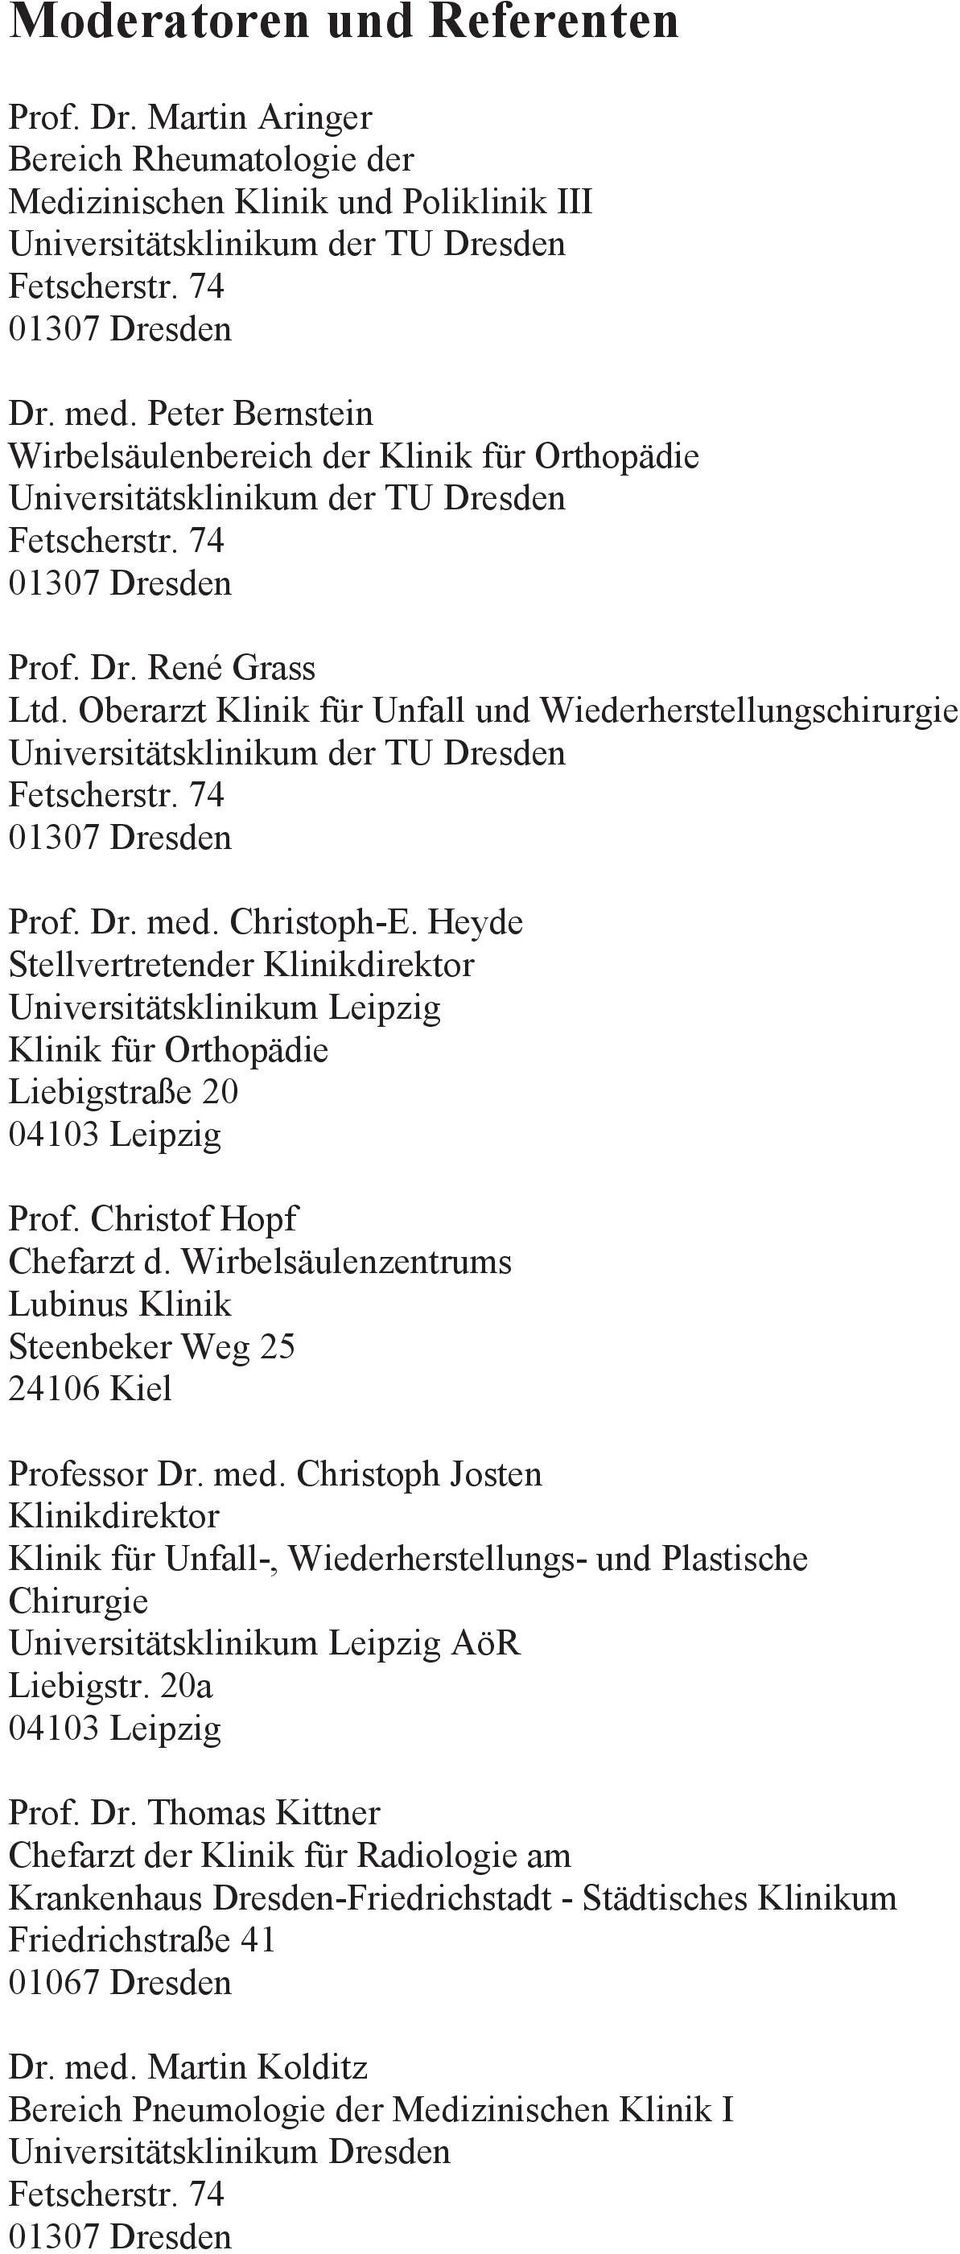 Wirbelsäulenzentrums Lubinus Klinik Steenbeker Weg 25 24106 Kiel Professor Dr. med. Christoph Josten Klinikdirektor Klinik für Unfall-, Wiederherstellungs- und Plastische Chirurgie AöR Liebigstr.